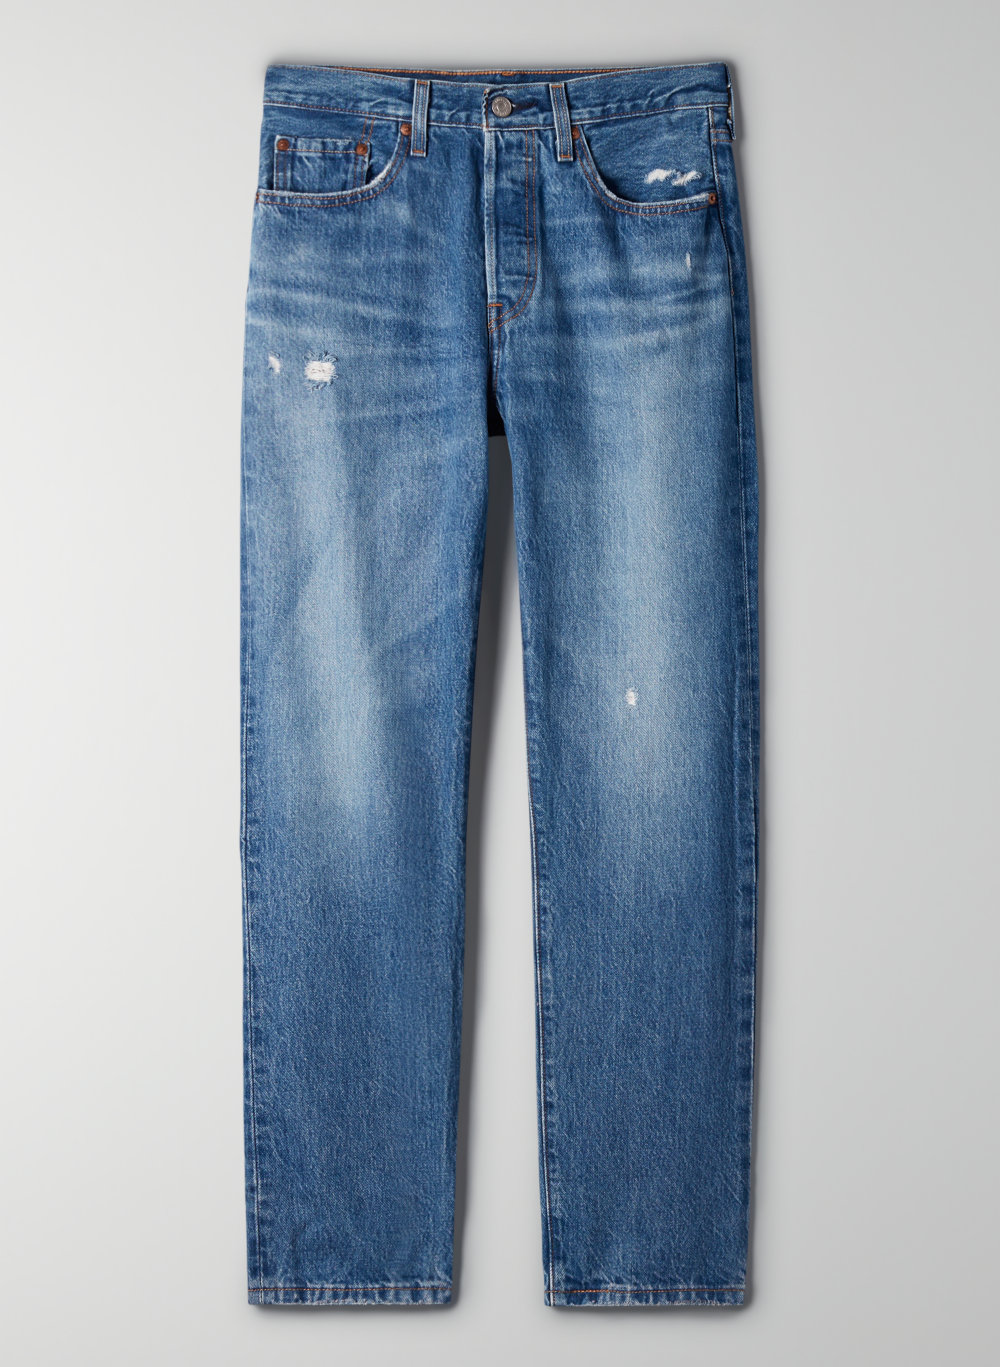 levis long jeans